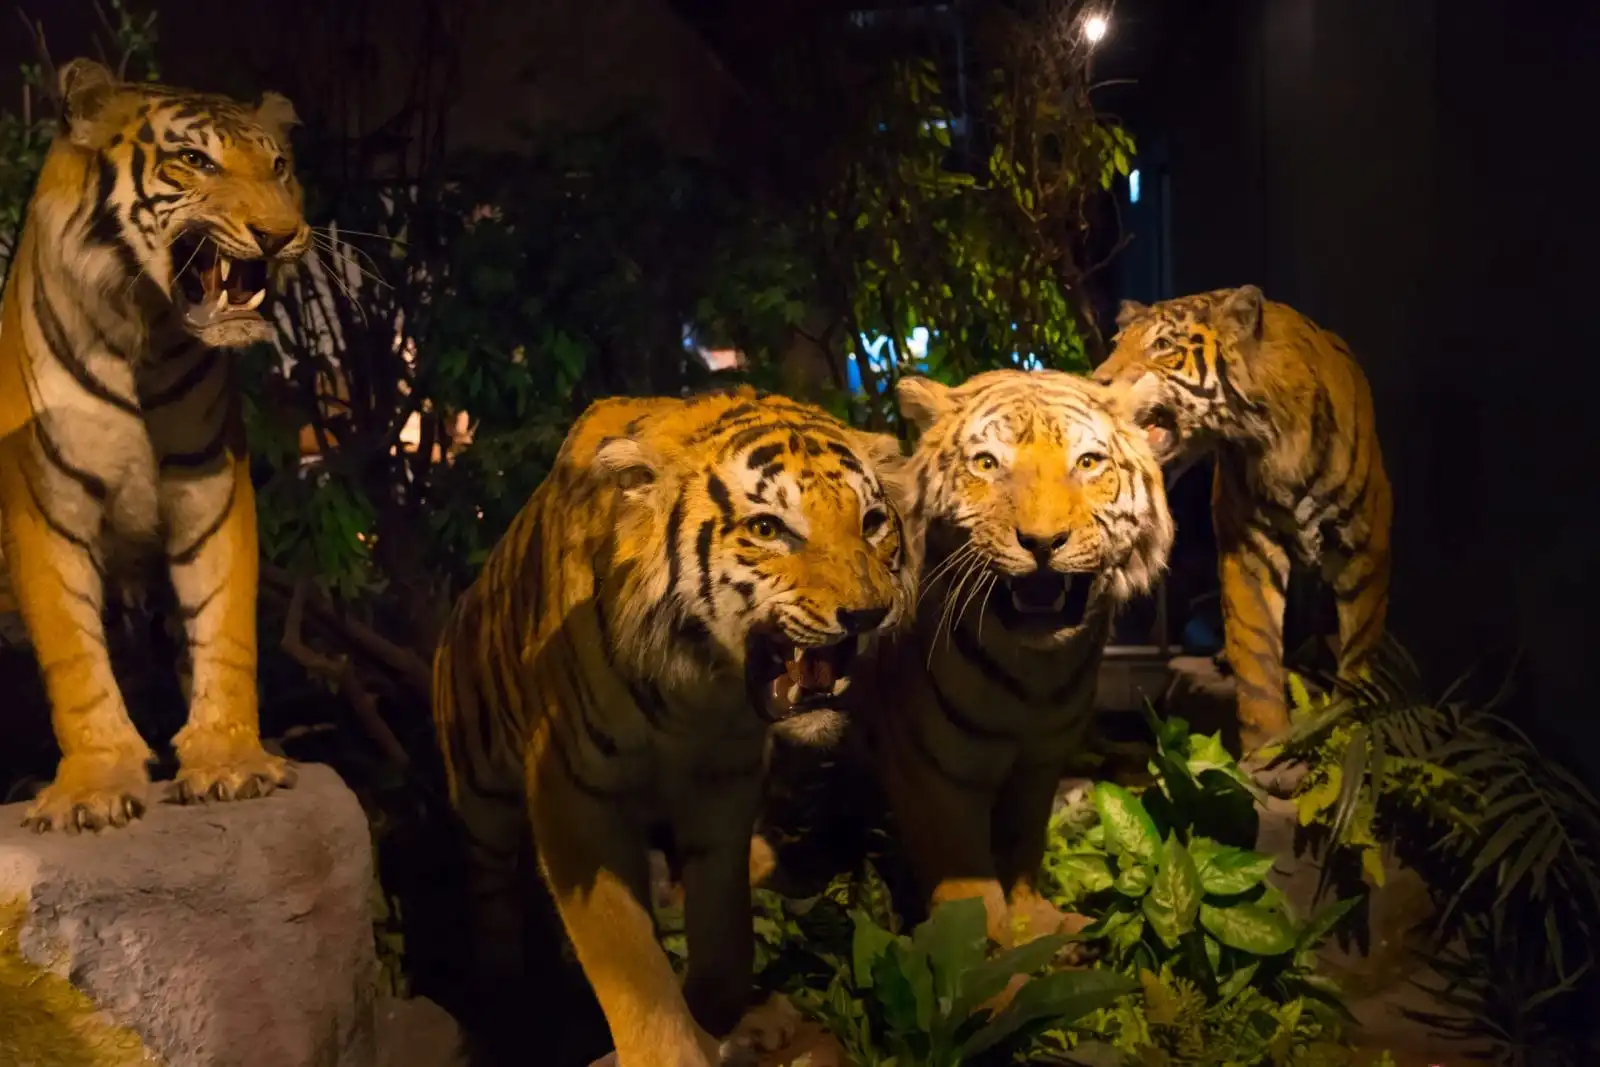 stuffed tigers